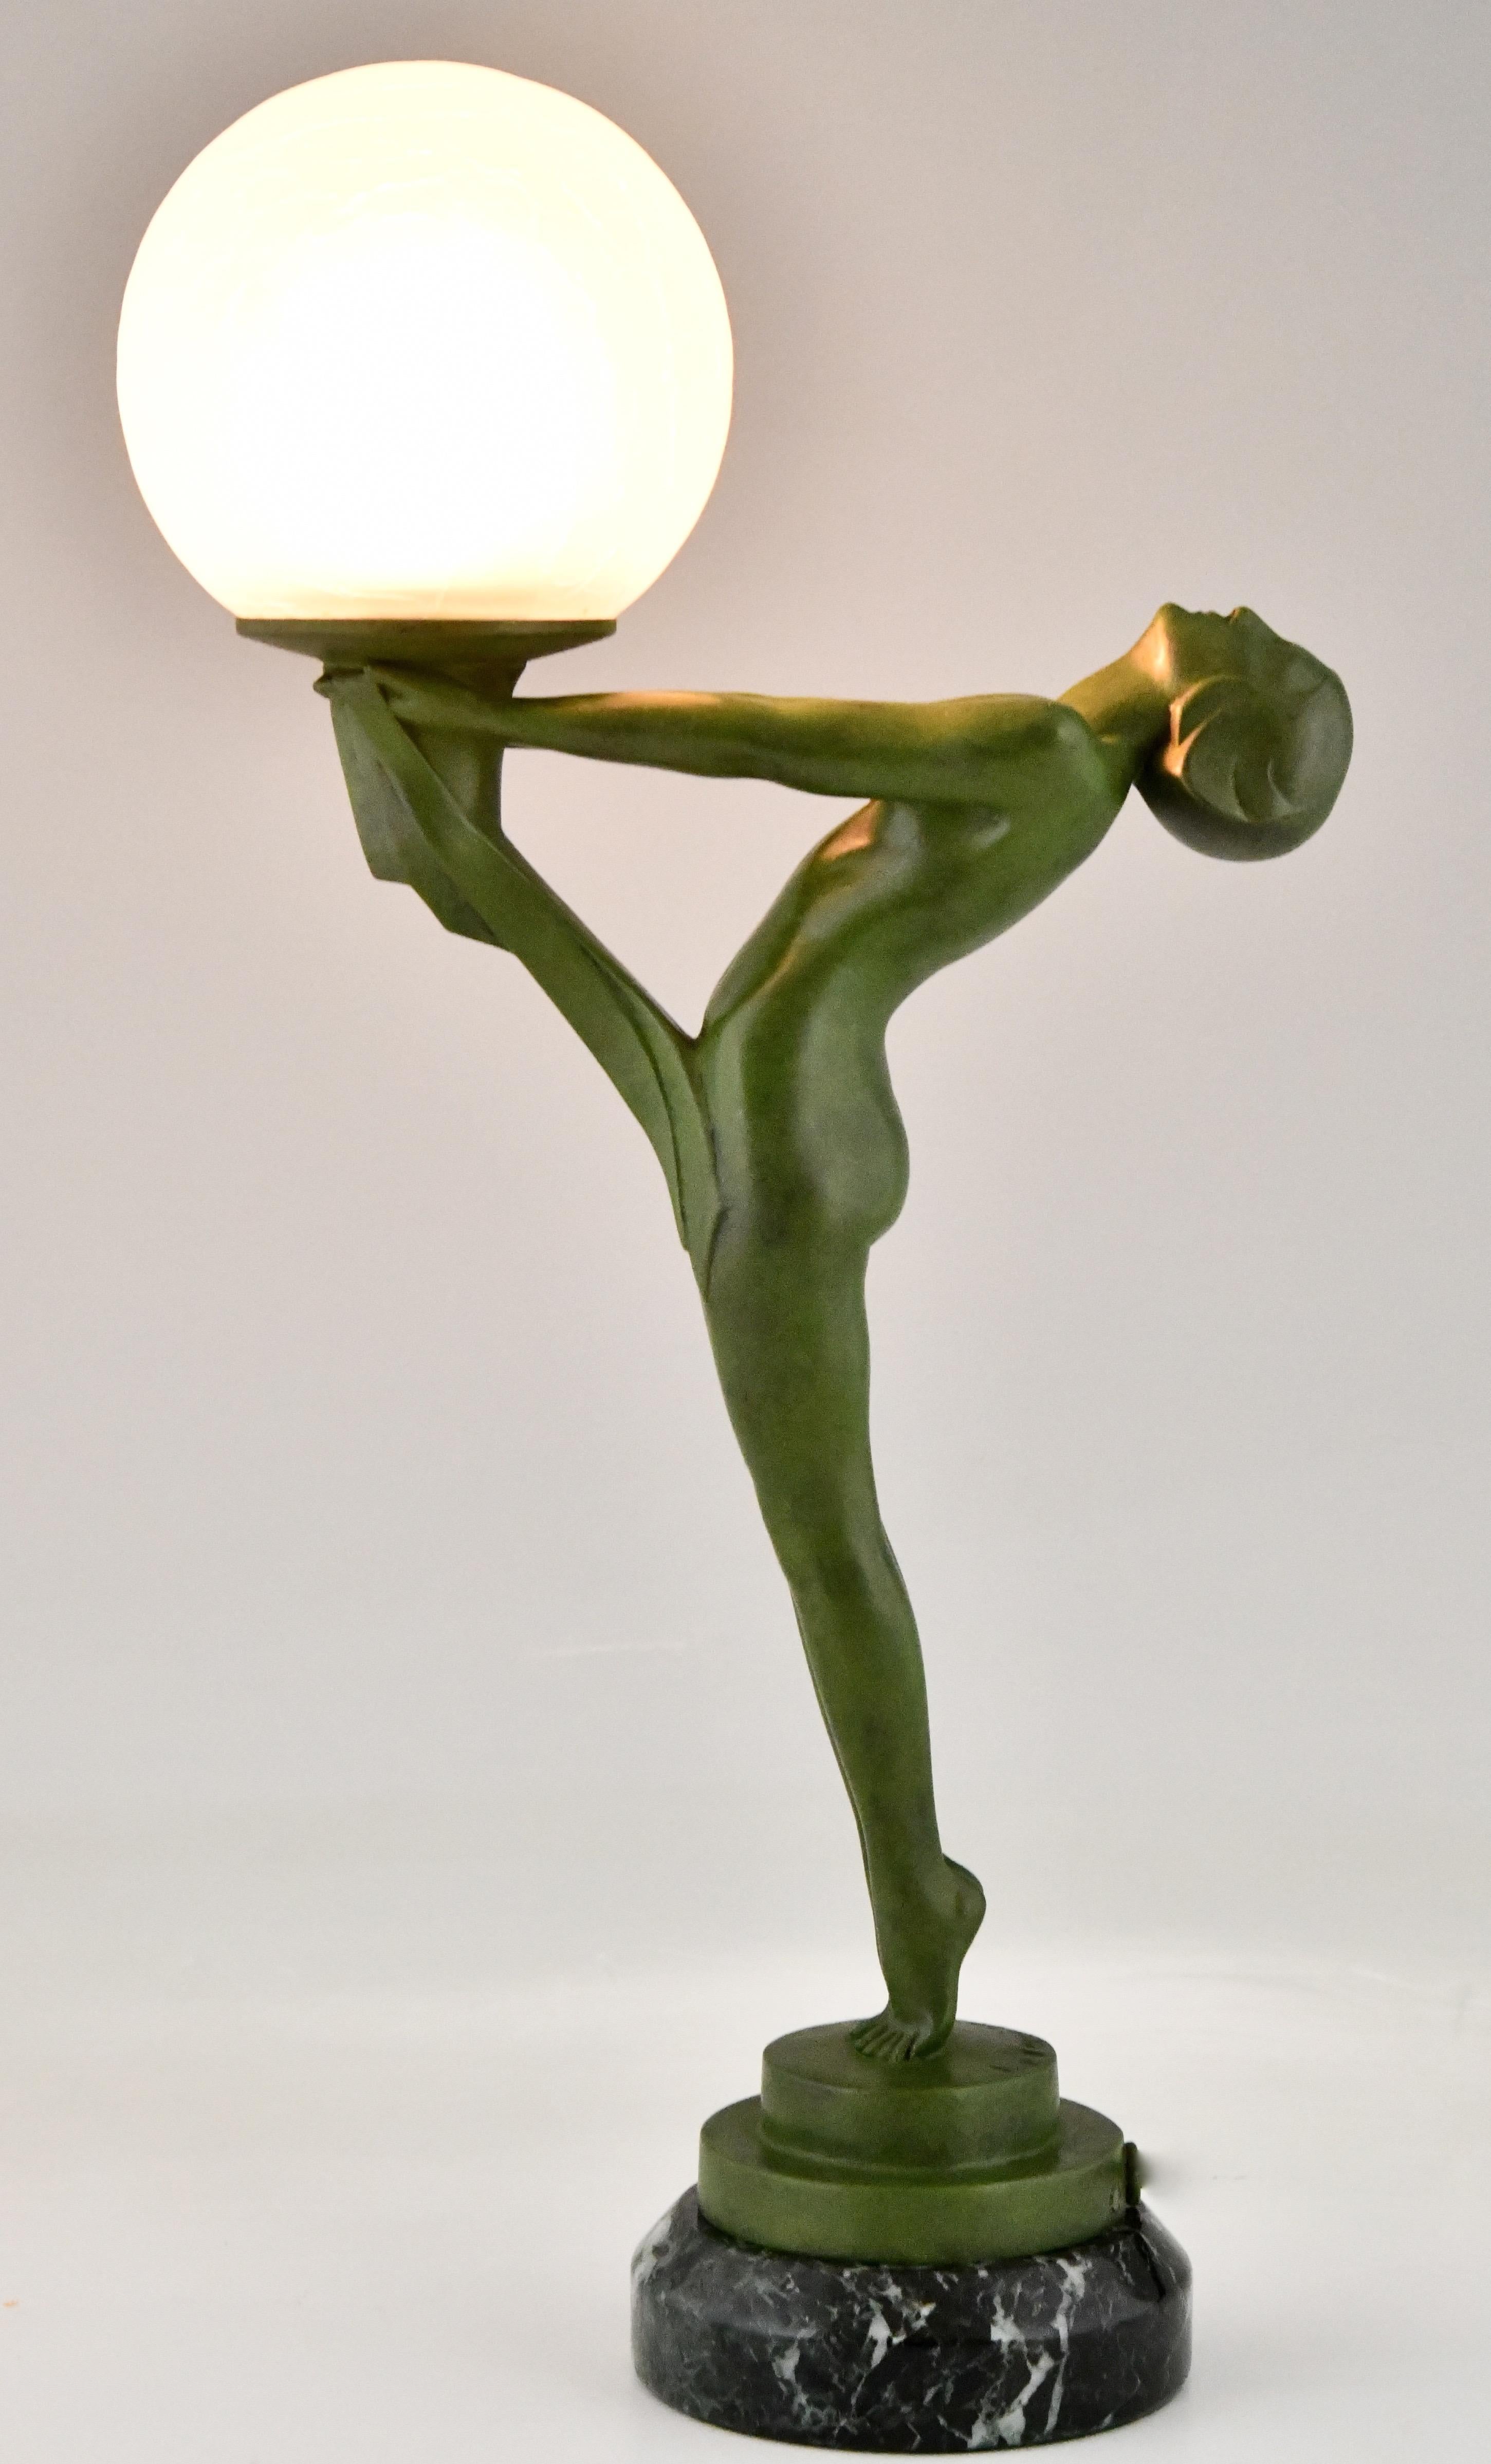 Lampe Art Déco, nu debout avec boule par Max Le Verrier. Cette lampe de table figurative est la version réduite du célèbre modèle Clarté. La statue est exécutée en métal d'art à patine verte et repose sur une base circulaire en marbre vert. France